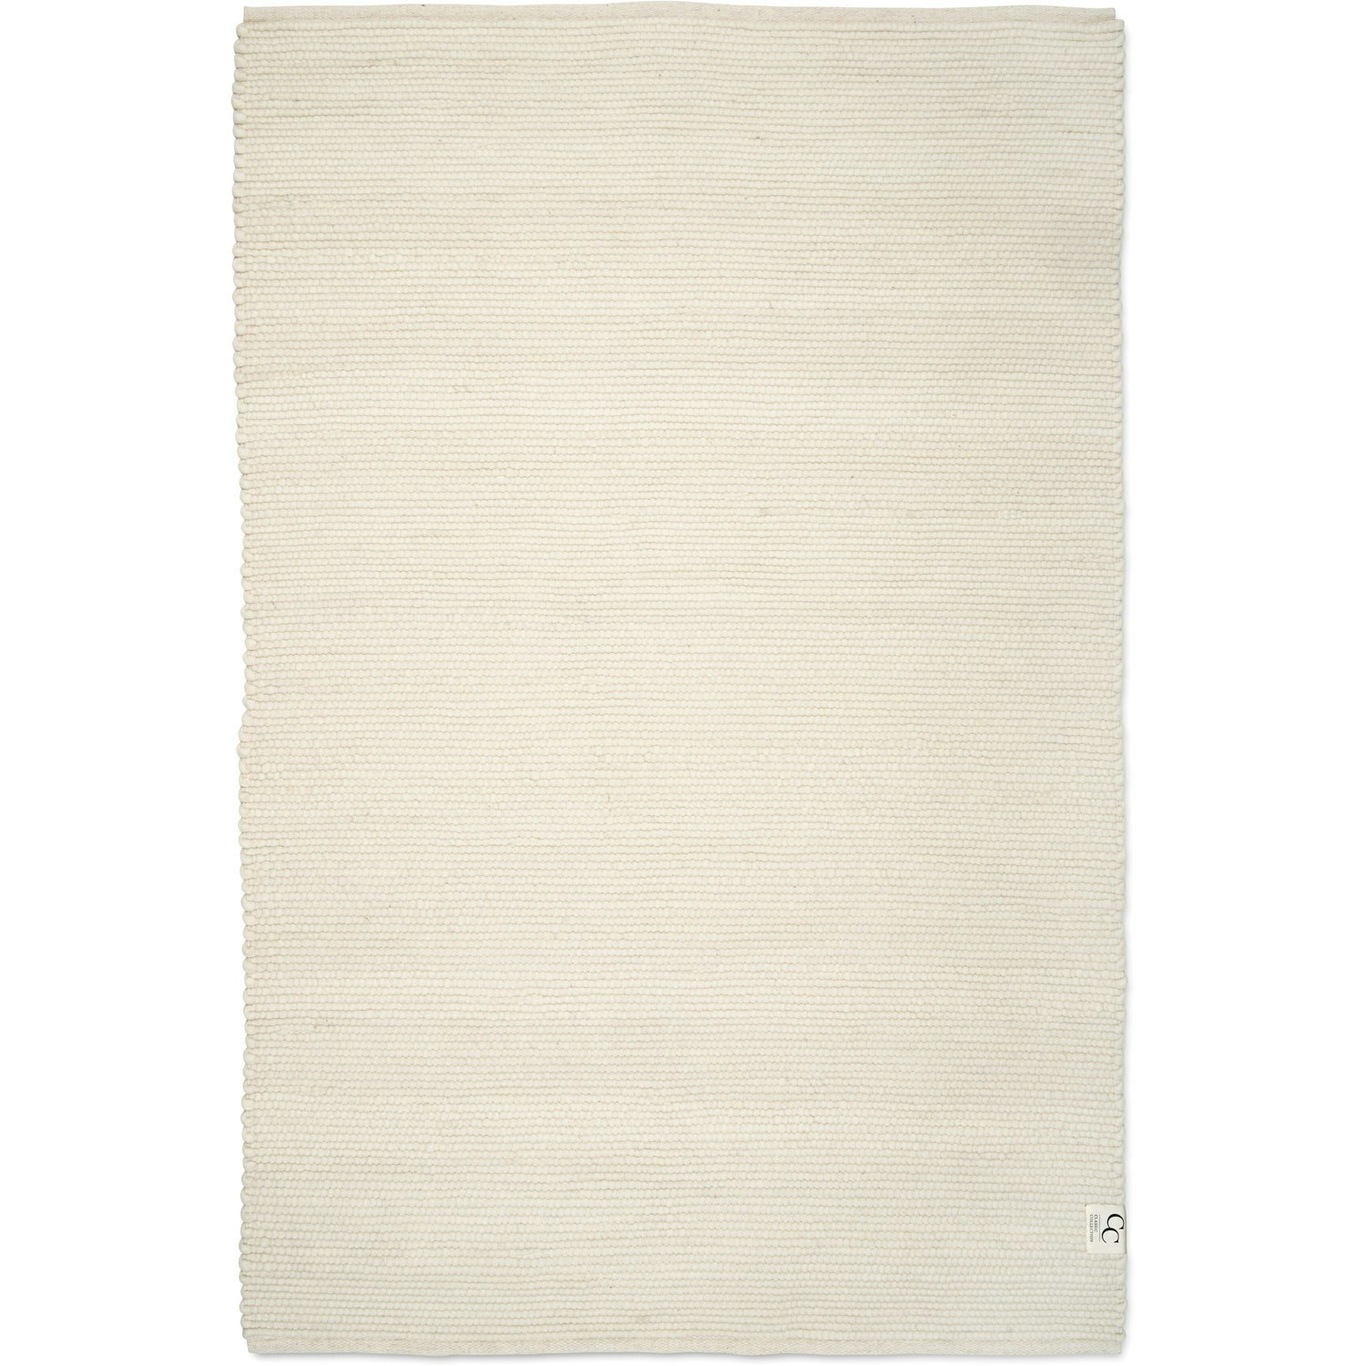 Merino Matto 170x230 cm, Valkoinen